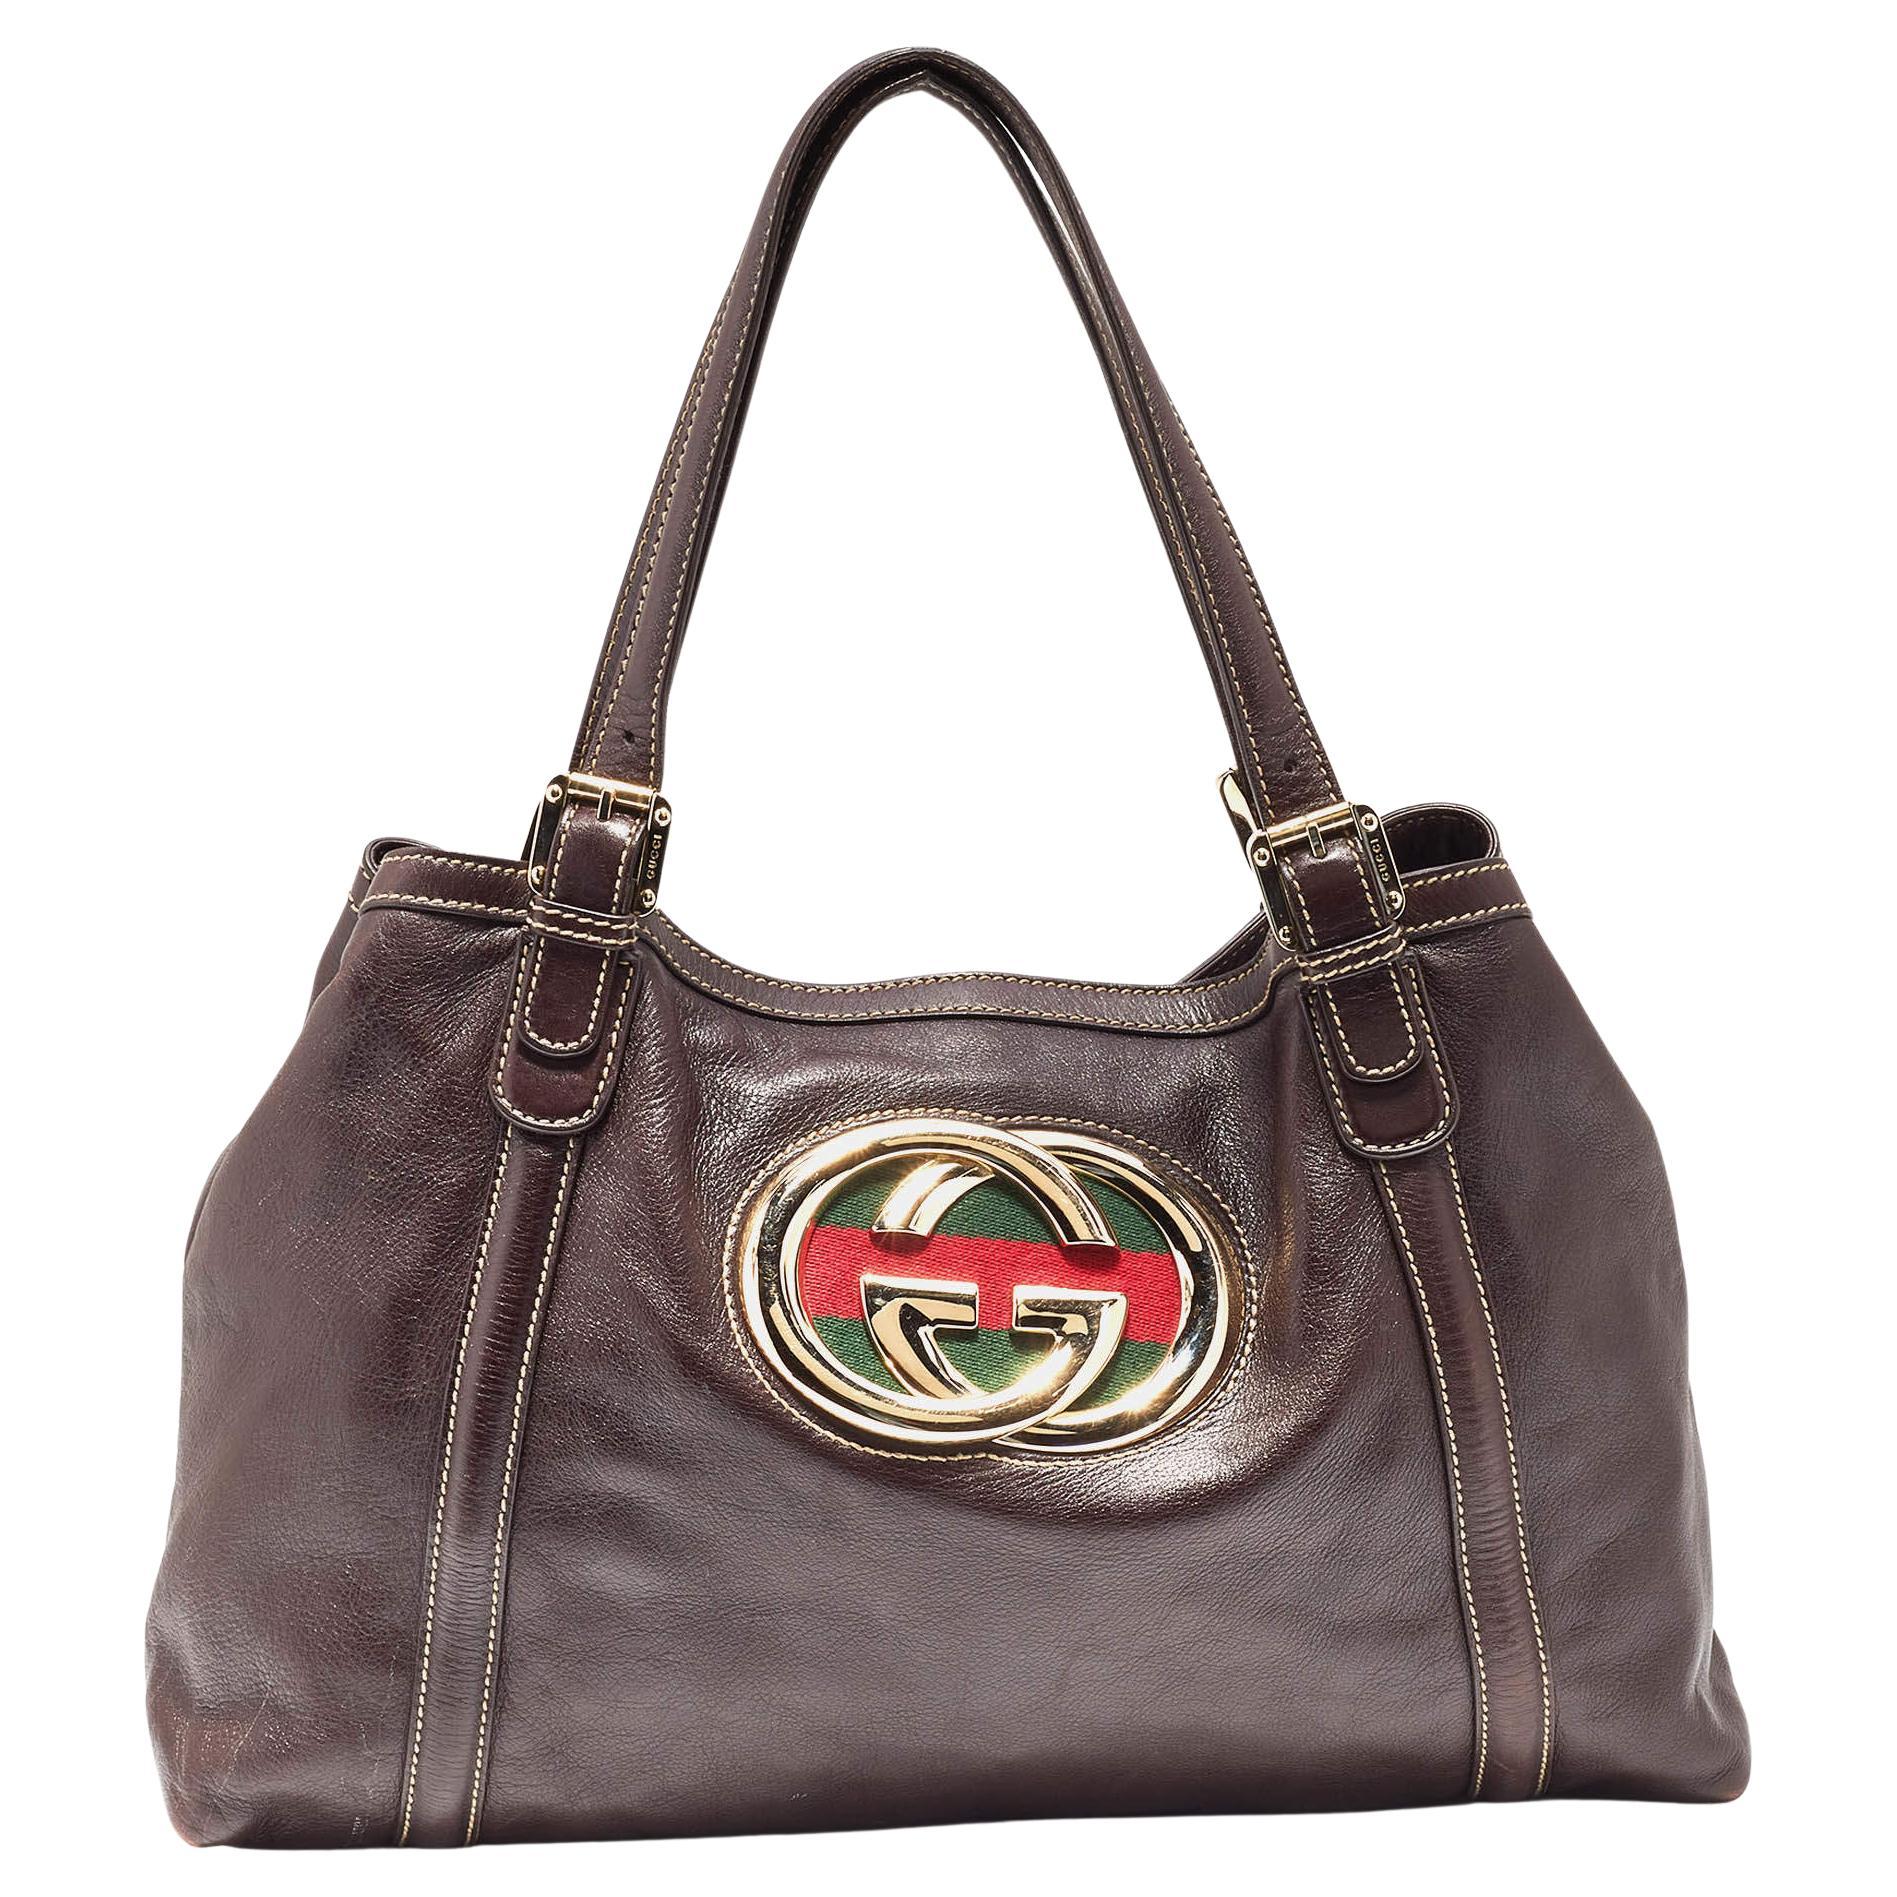 Gucci Handbag Gray - 89 For Sale on 1stDibs | gucci bag gray, gray